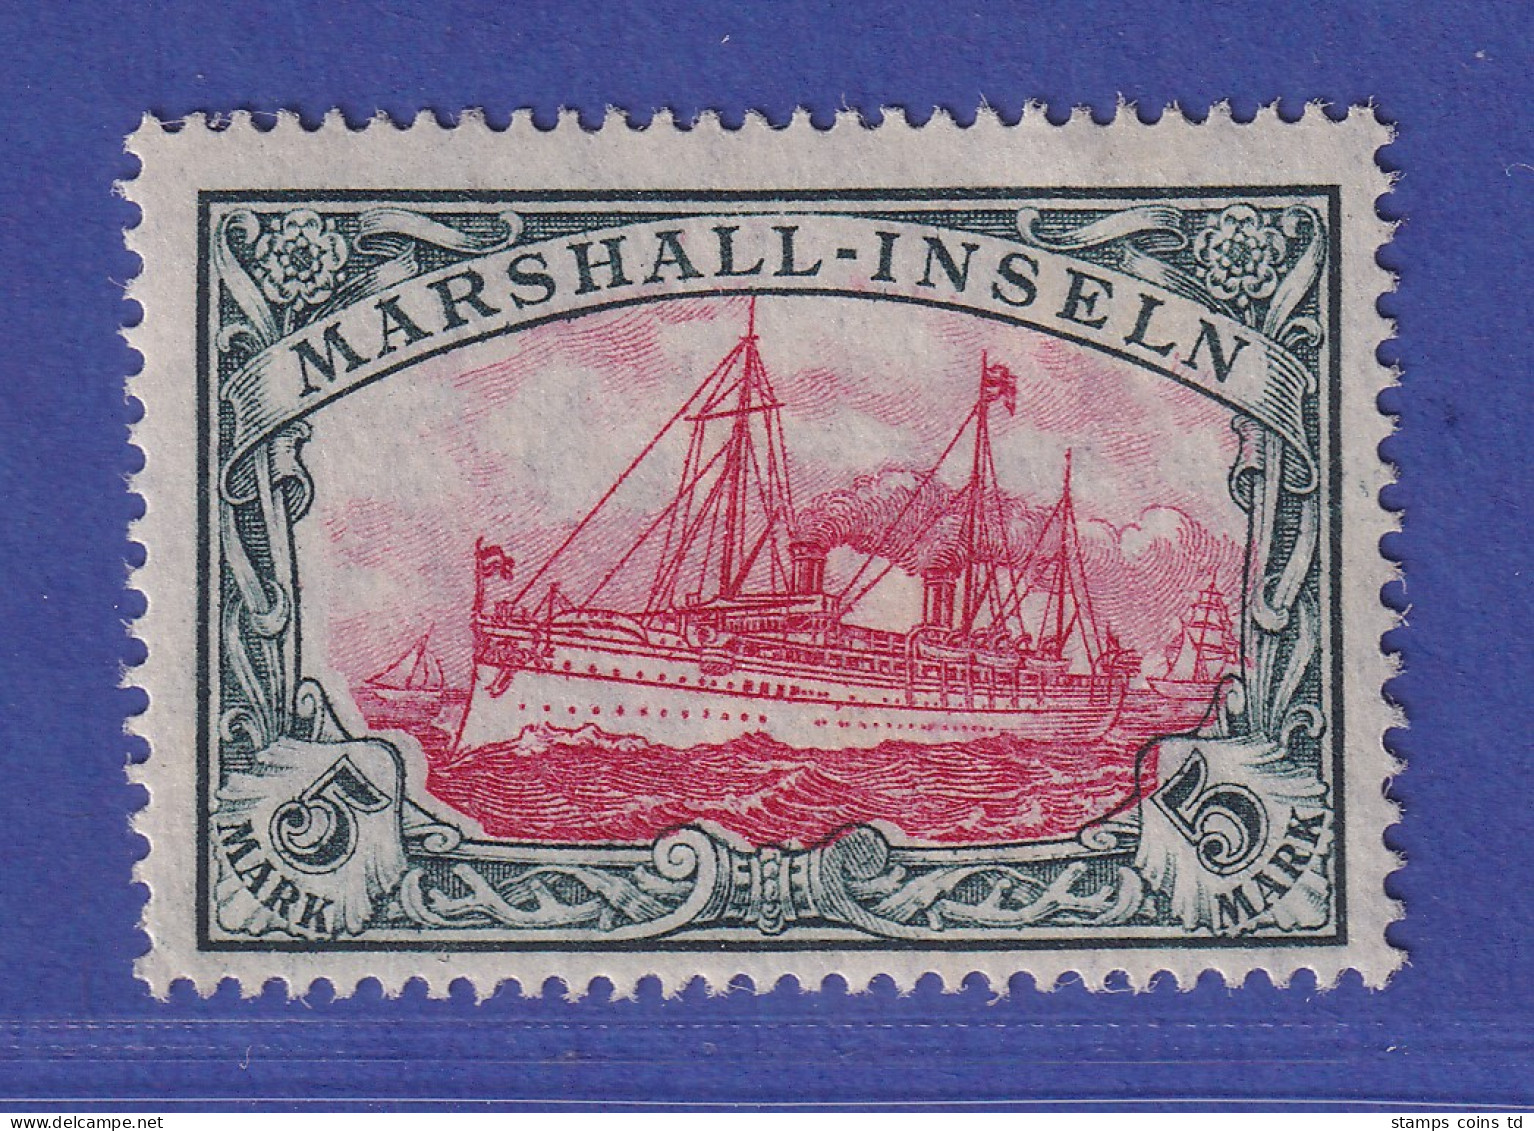 Dt. Kolonien Marshall-Inseln 1916  5 Mark  Mi.-Nr. 27AI Postfrisch ** - Marshall-Inseln